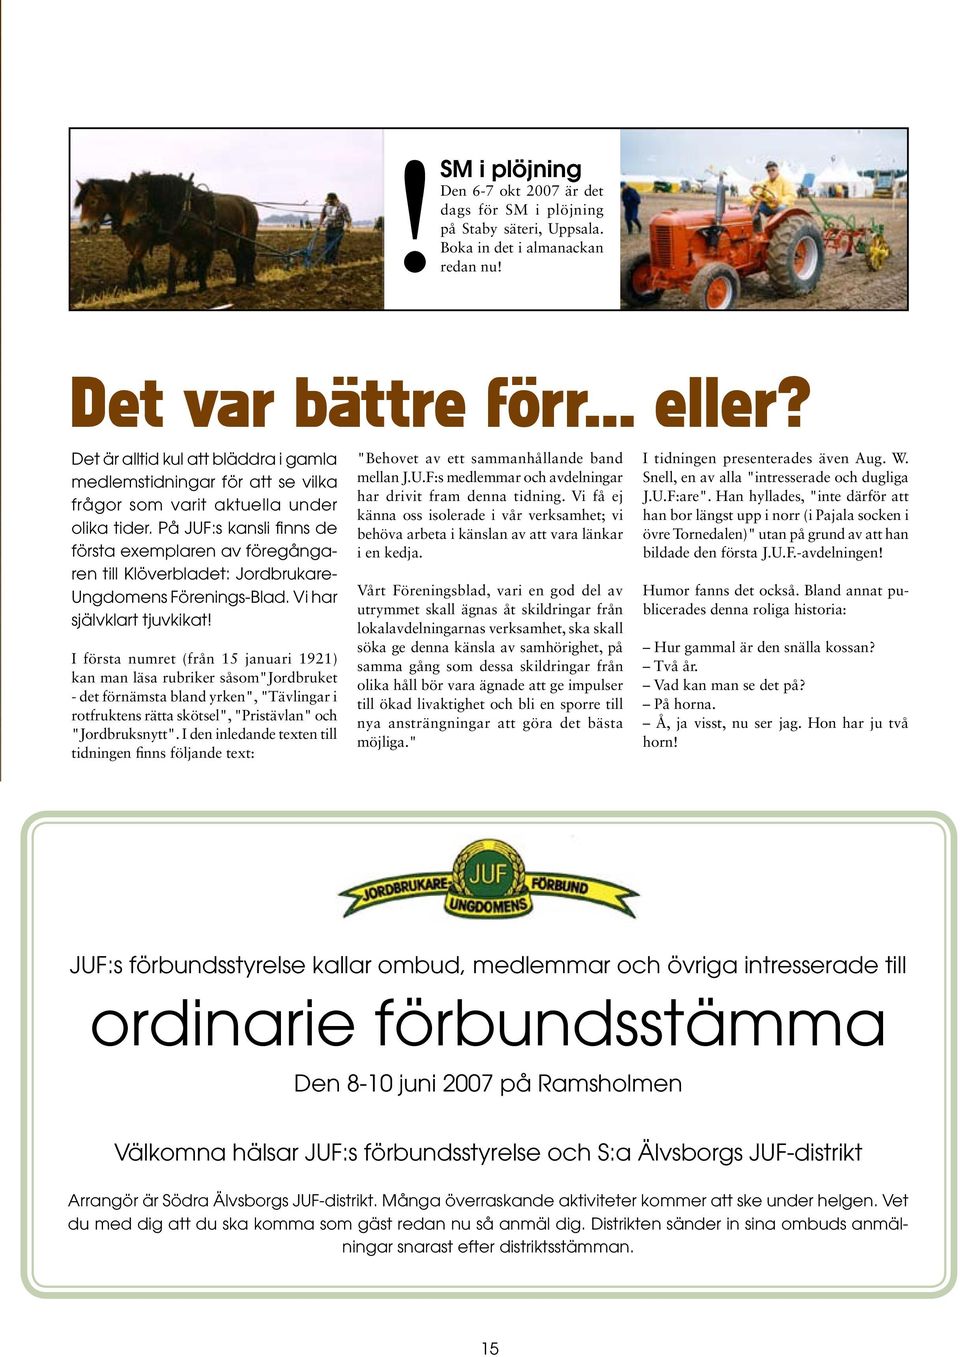 På JUF:s kansli finns de första exemplaren av föregångaren till Klöverbladet: Jordbrukare- Ungdomens Förenings-Blad. Vi har självklart tjuvkikat!